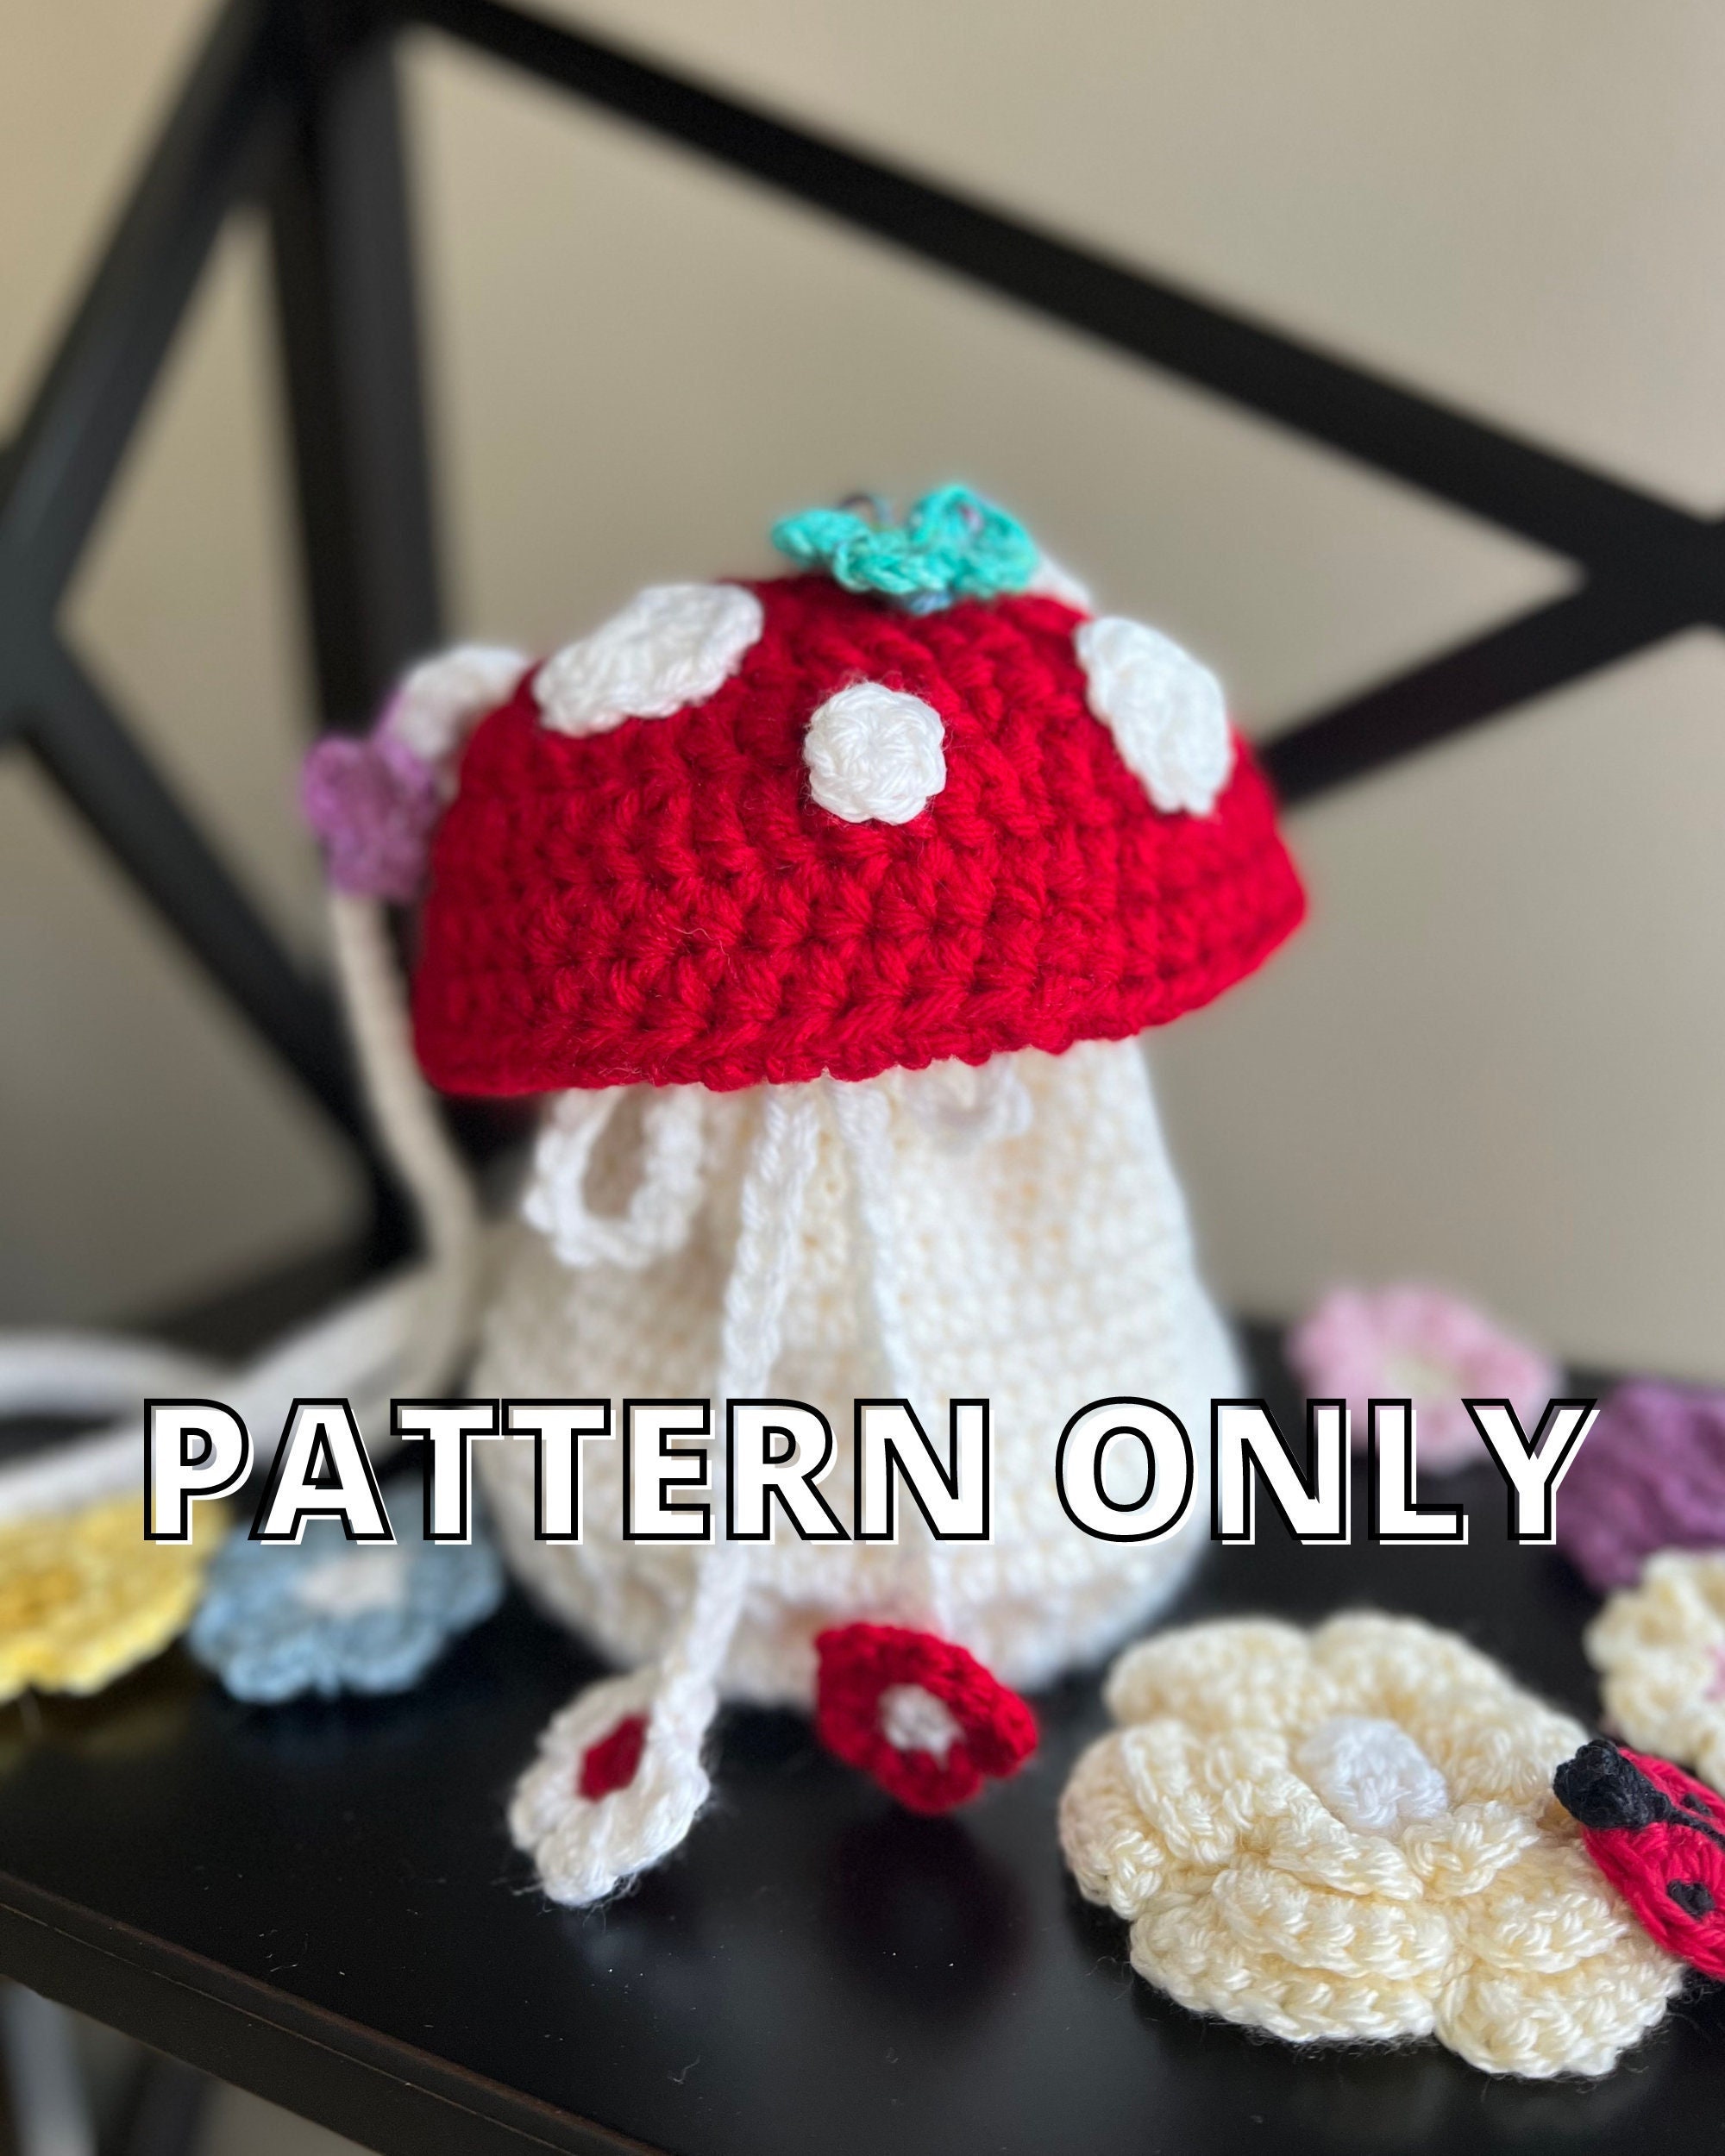 Mushroom Crochet Kit, Amigurumi Kit, Crochet Kit Beginner With Yarn, Mushroom  Crochet Pattern, Amigurumi Crochet Pattern, Toadstool Crochet 